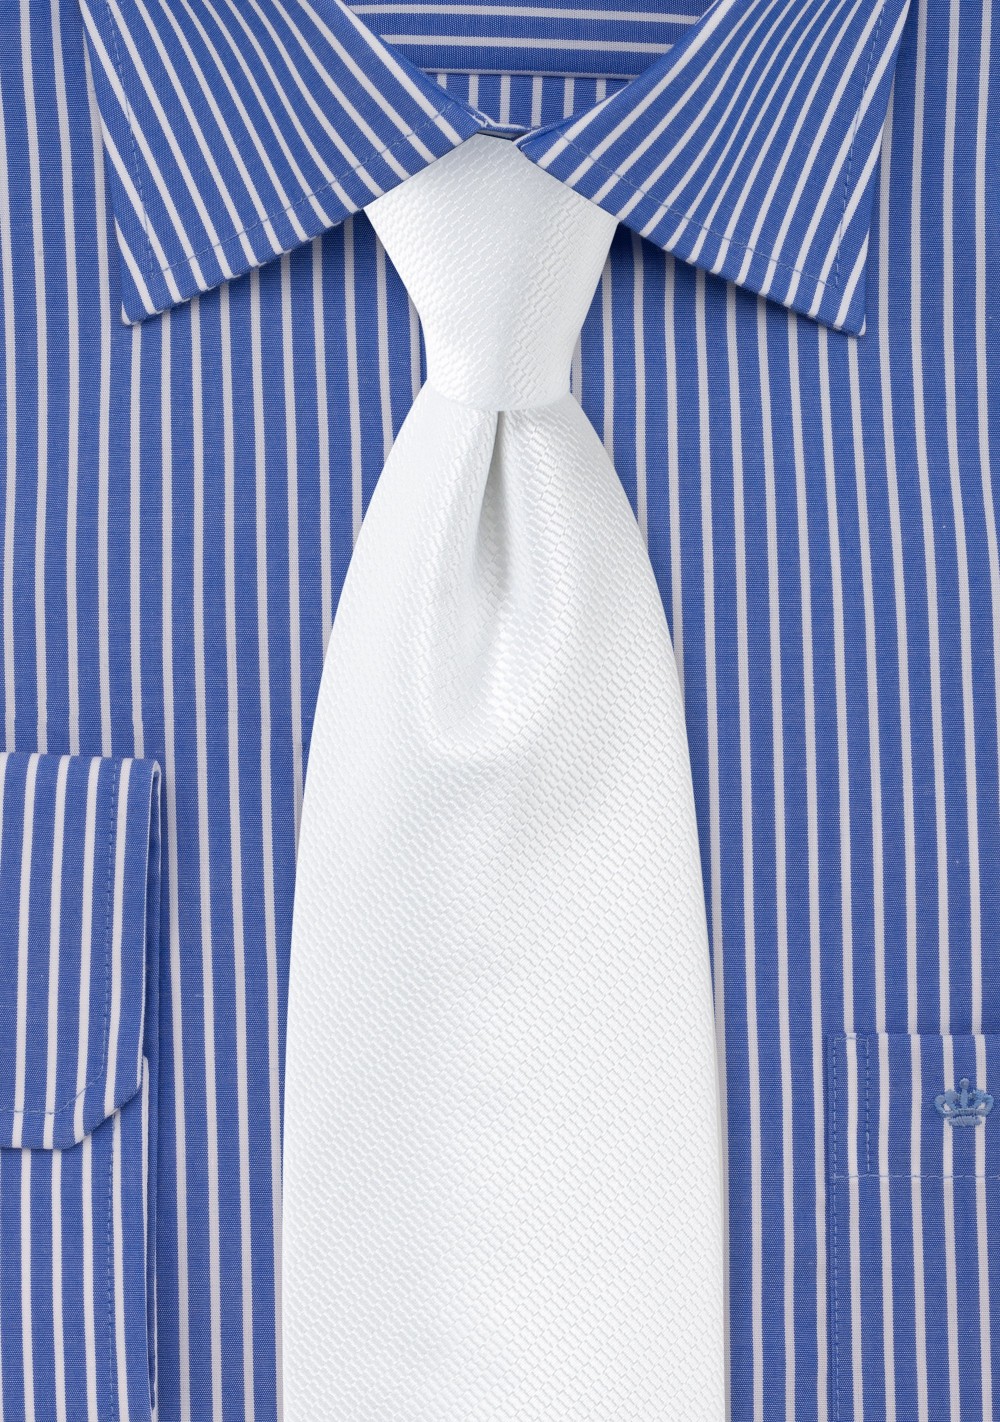 White Neckties | Shop White Men's Ties | Bows-N-Ties.com